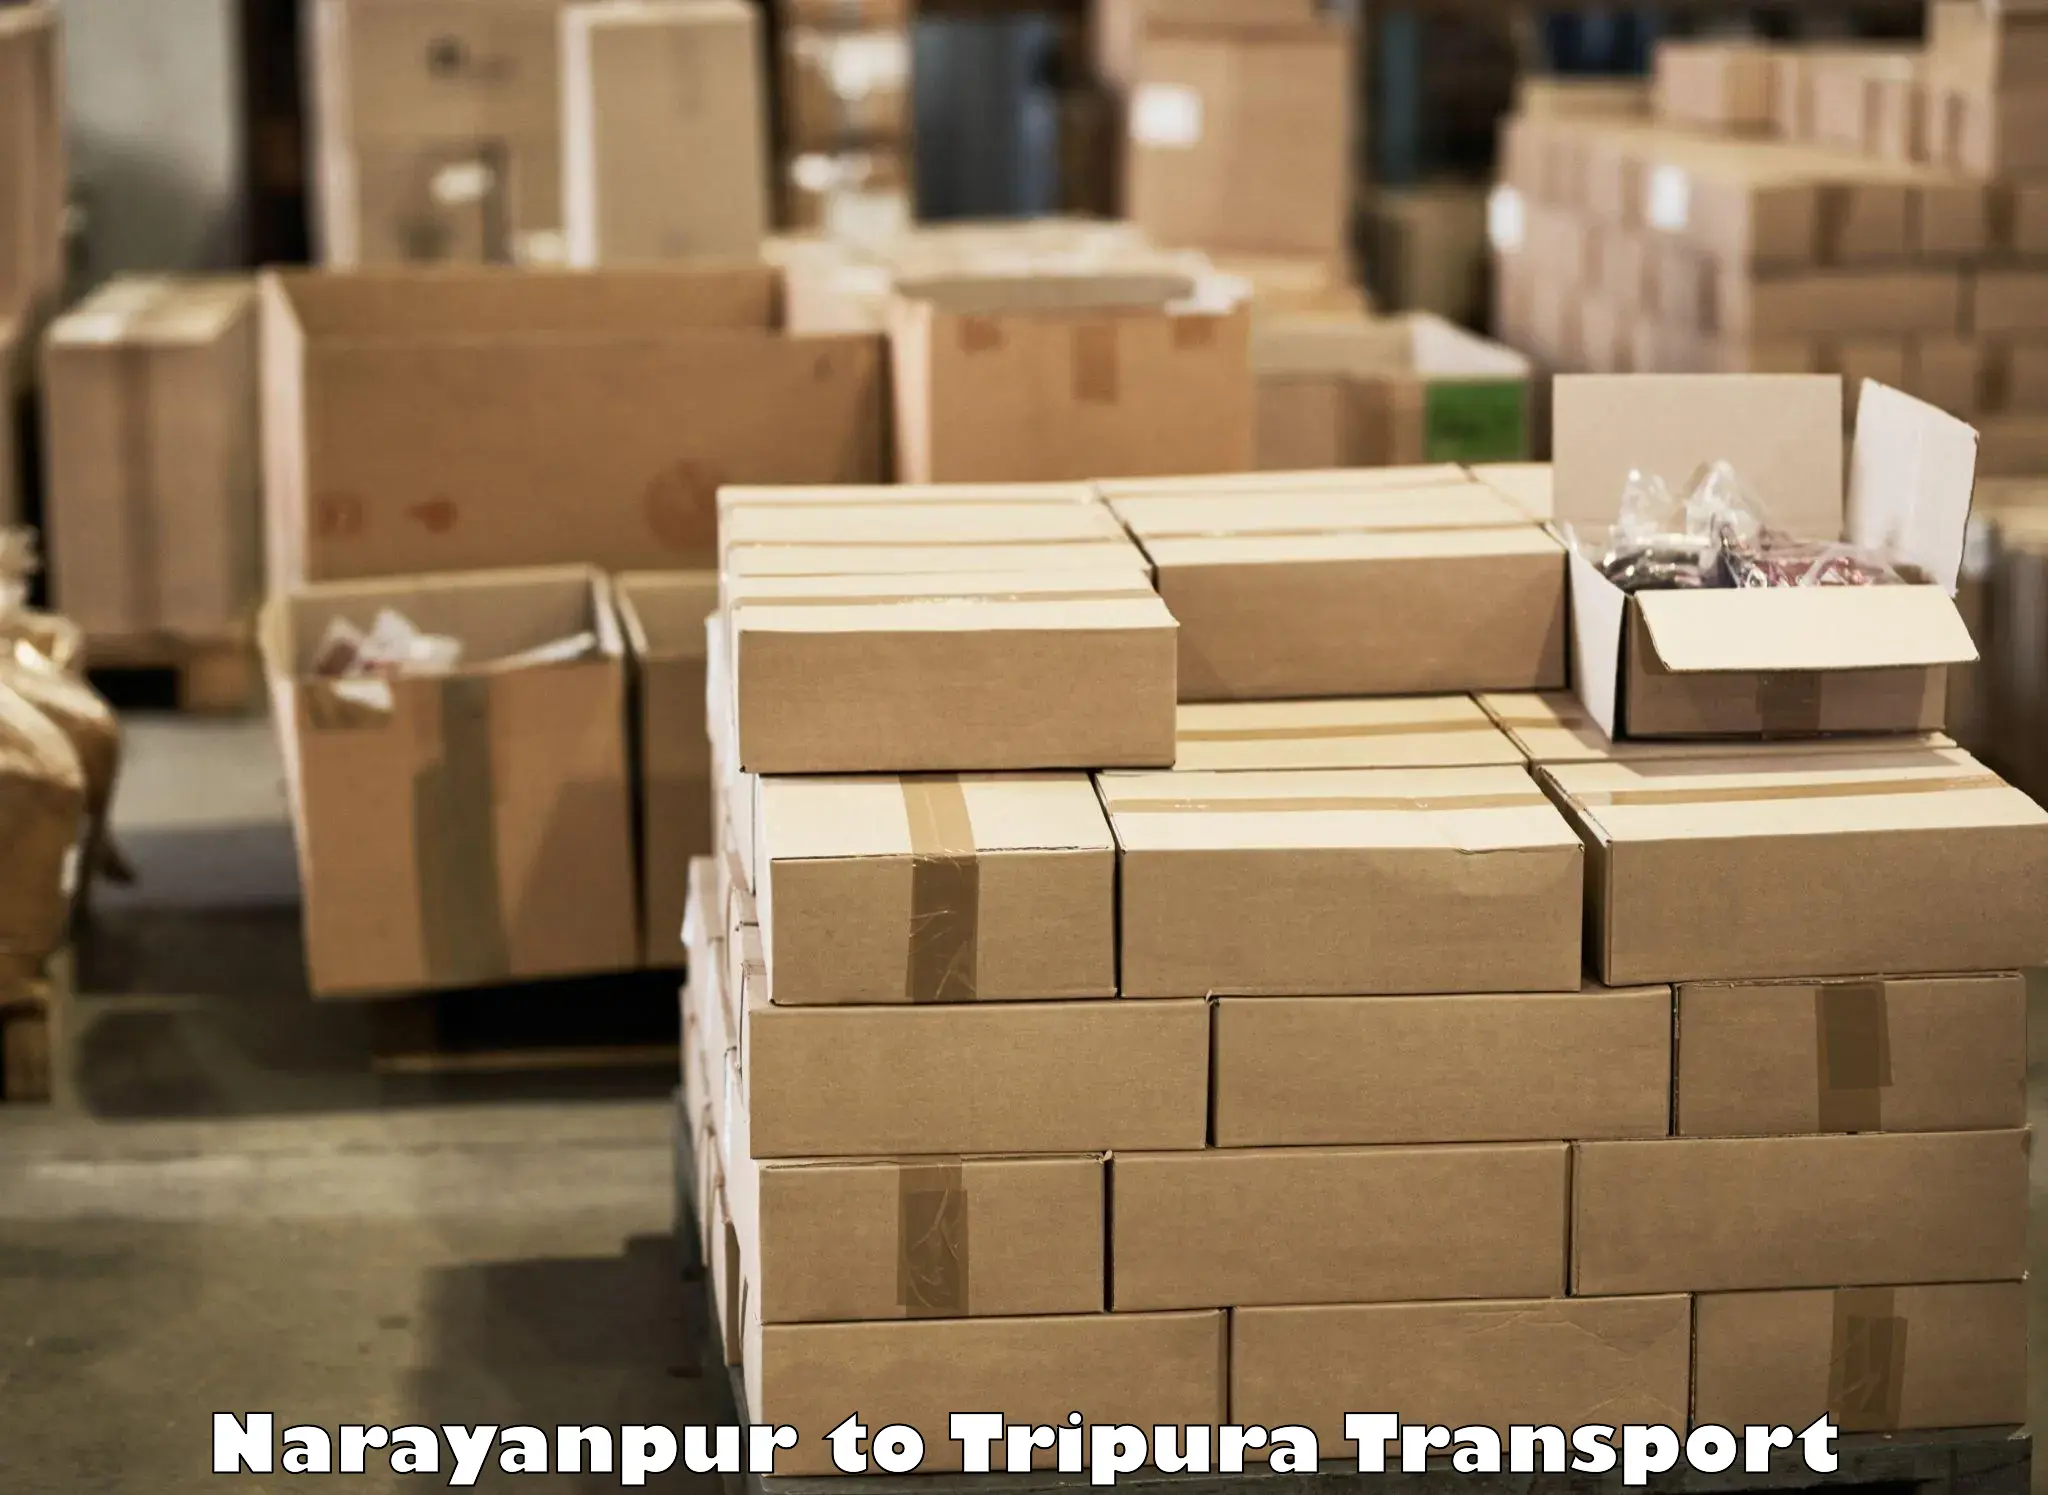 Interstate transport services Narayanpur to Santirbazar